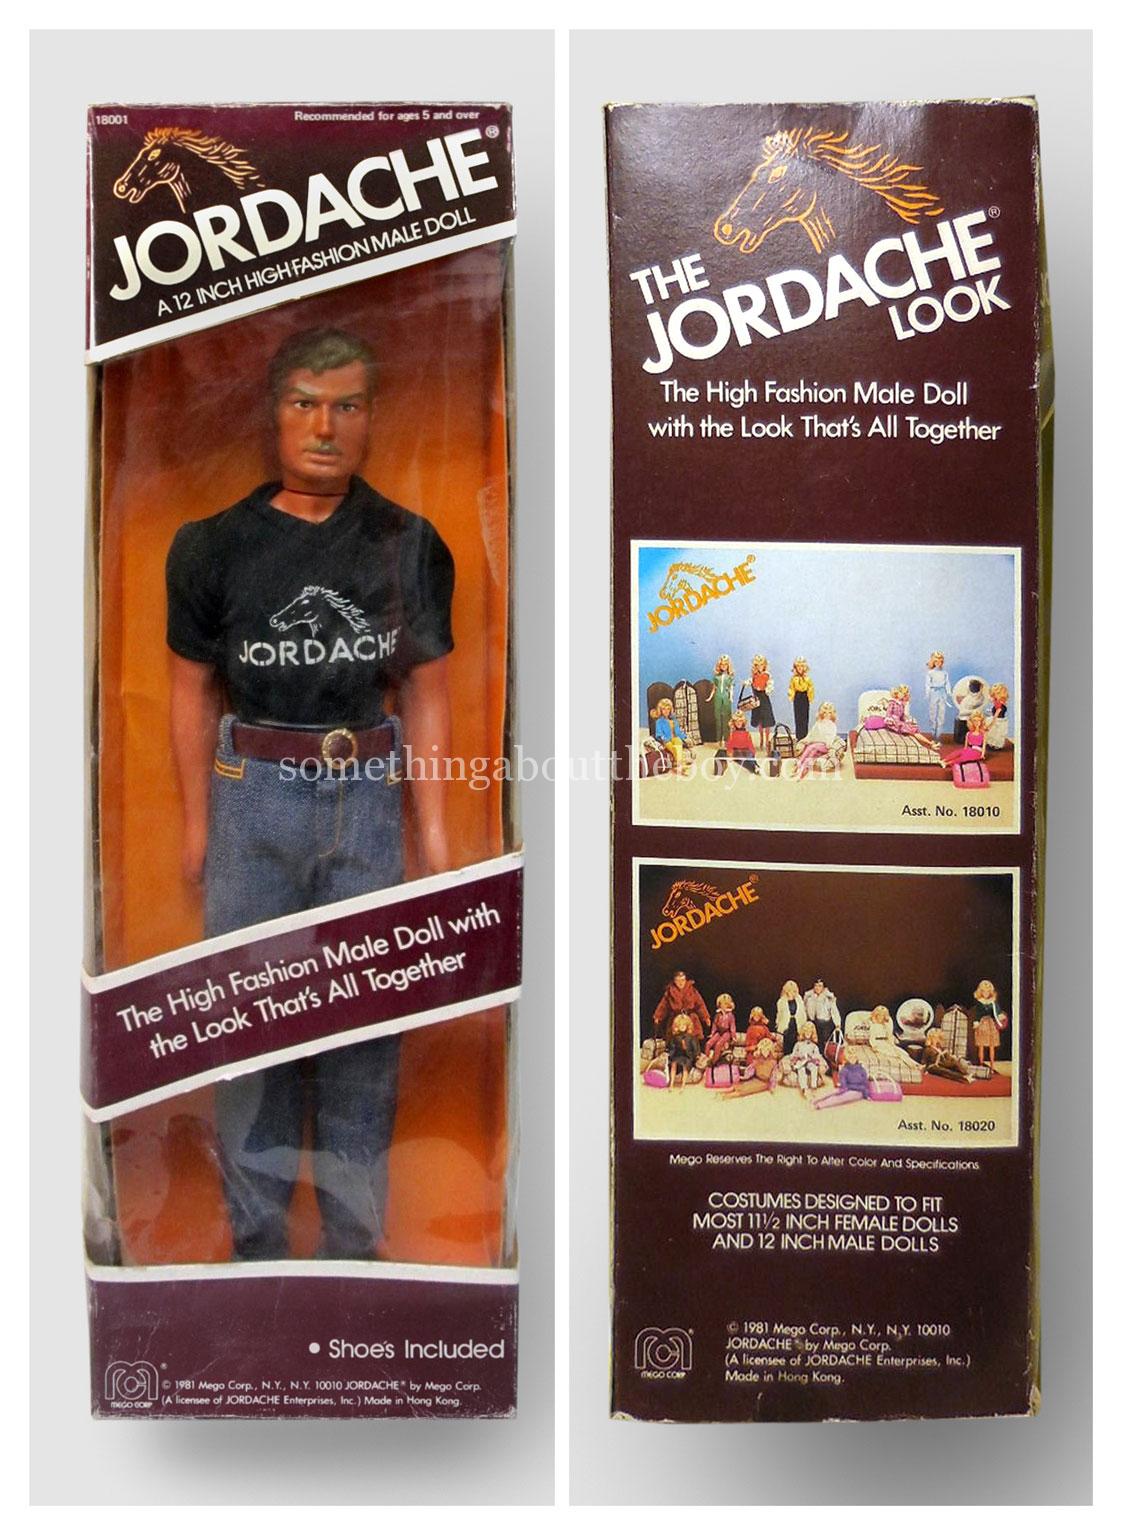 1981 Jordache high fashion male doll by Mego